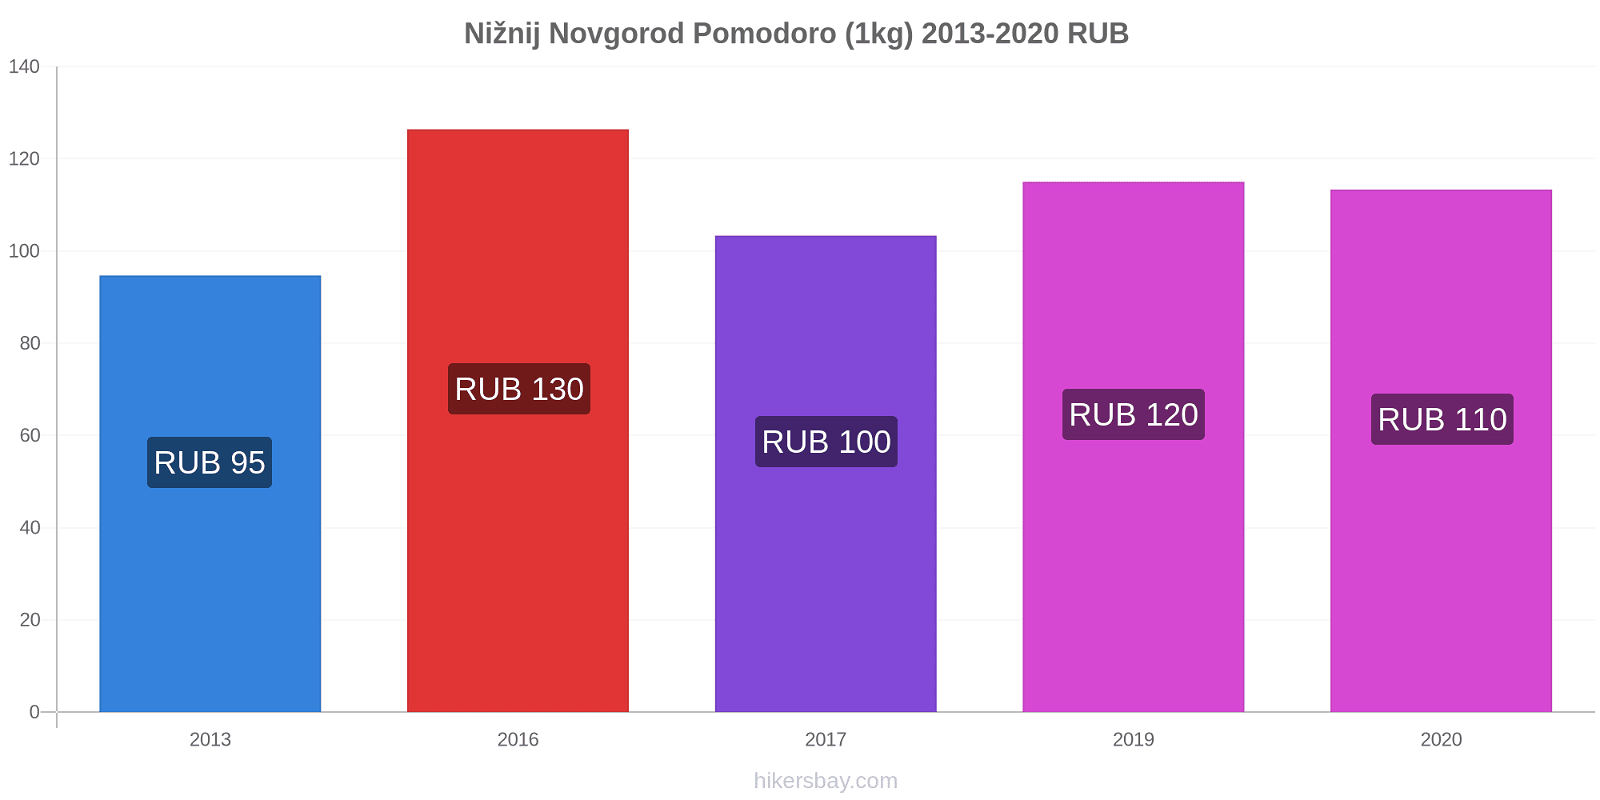 Nižnij Novgorod variazioni di prezzo Pomodoro (1kg) hikersbay.com